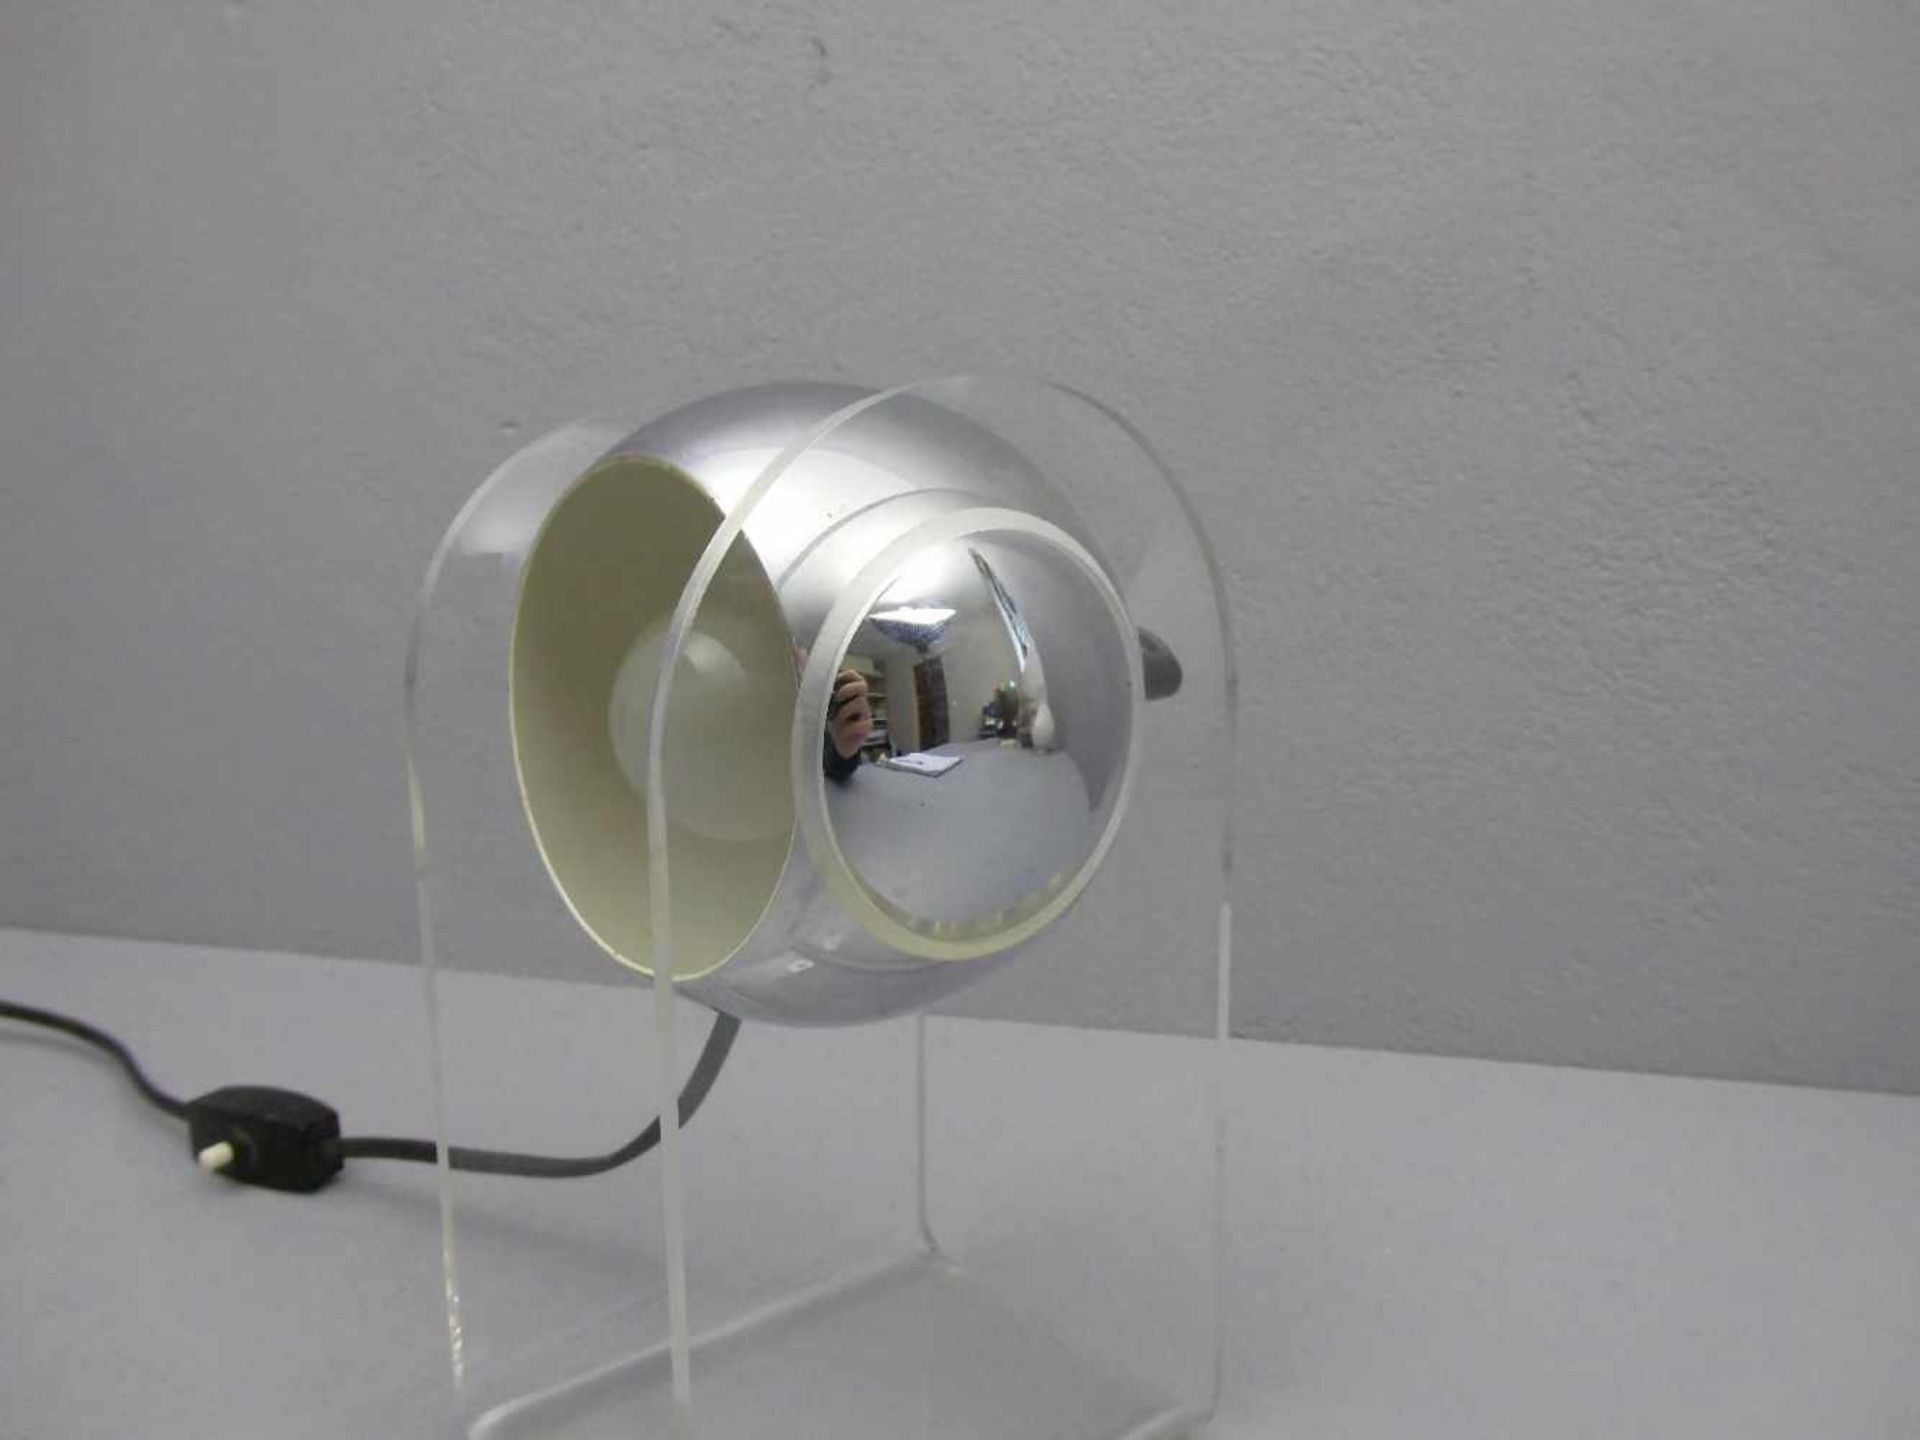 LAMPE / TISCHLAMPE, 1960er / 1970er Jahre, gebogter Acrylglasstand und verchromte kugelförmige - Bild 2 aus 3